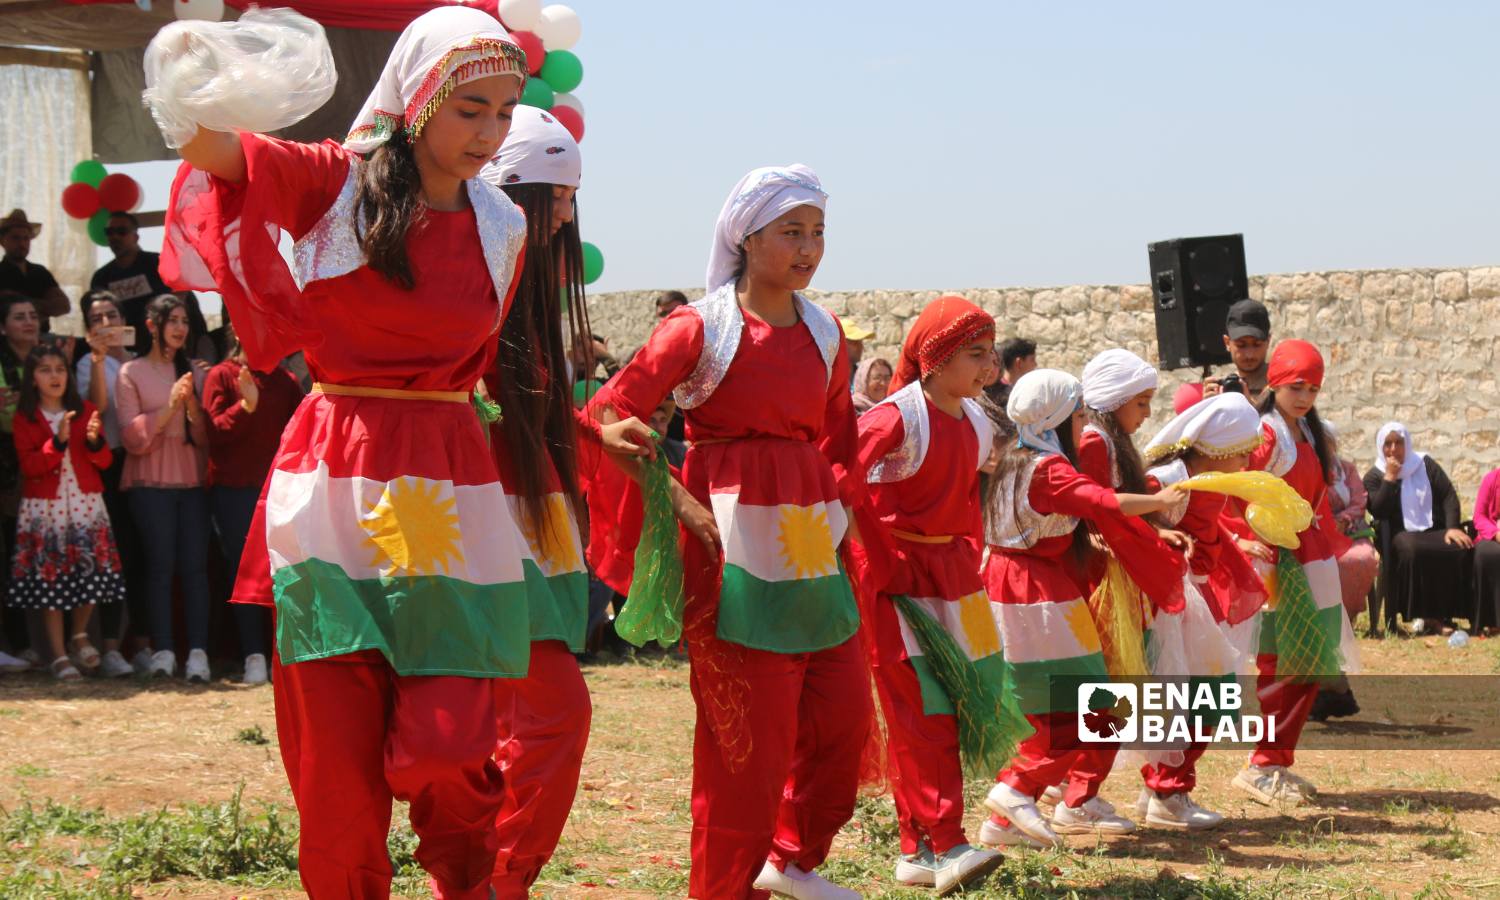 الإيزيديون يحتفلون بعيد "الأربعاء الأحمر"- أول أربعاء في نيسان حسب التقويم الشرقي- في عفرين - 17 من نيسان 2024 (/ديان جنباز)